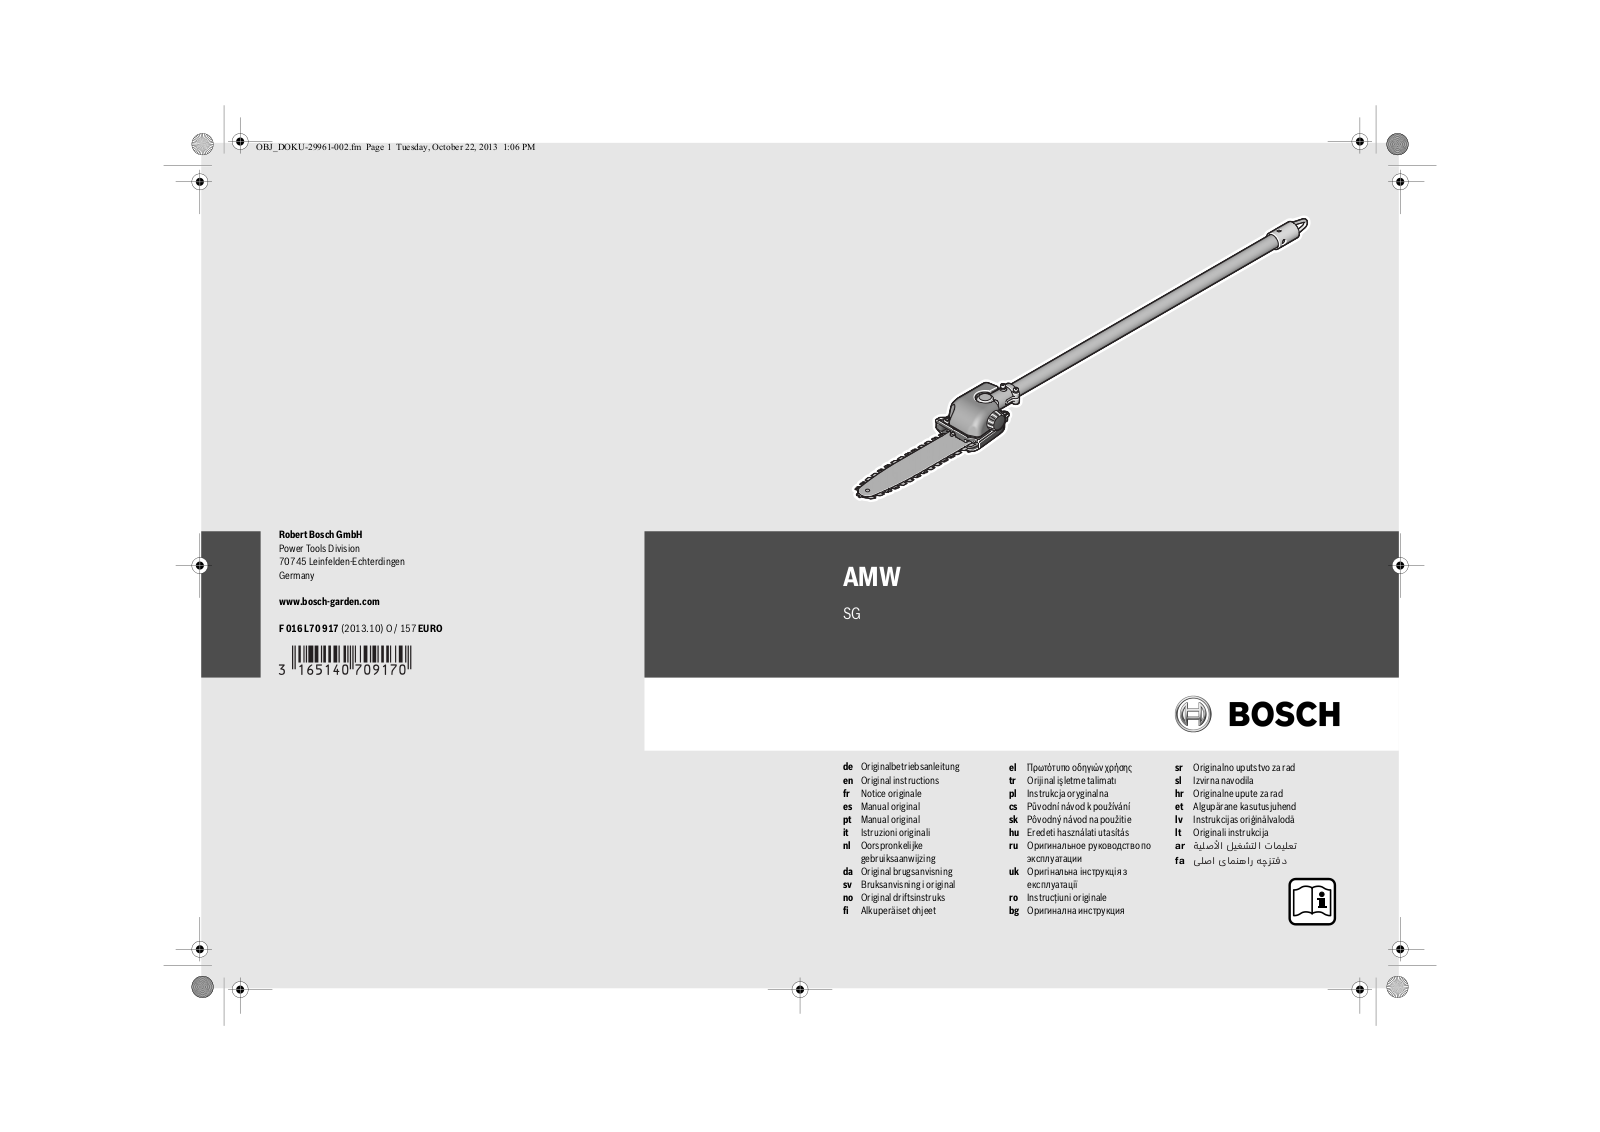 Bosch AMW SG Instruction manual